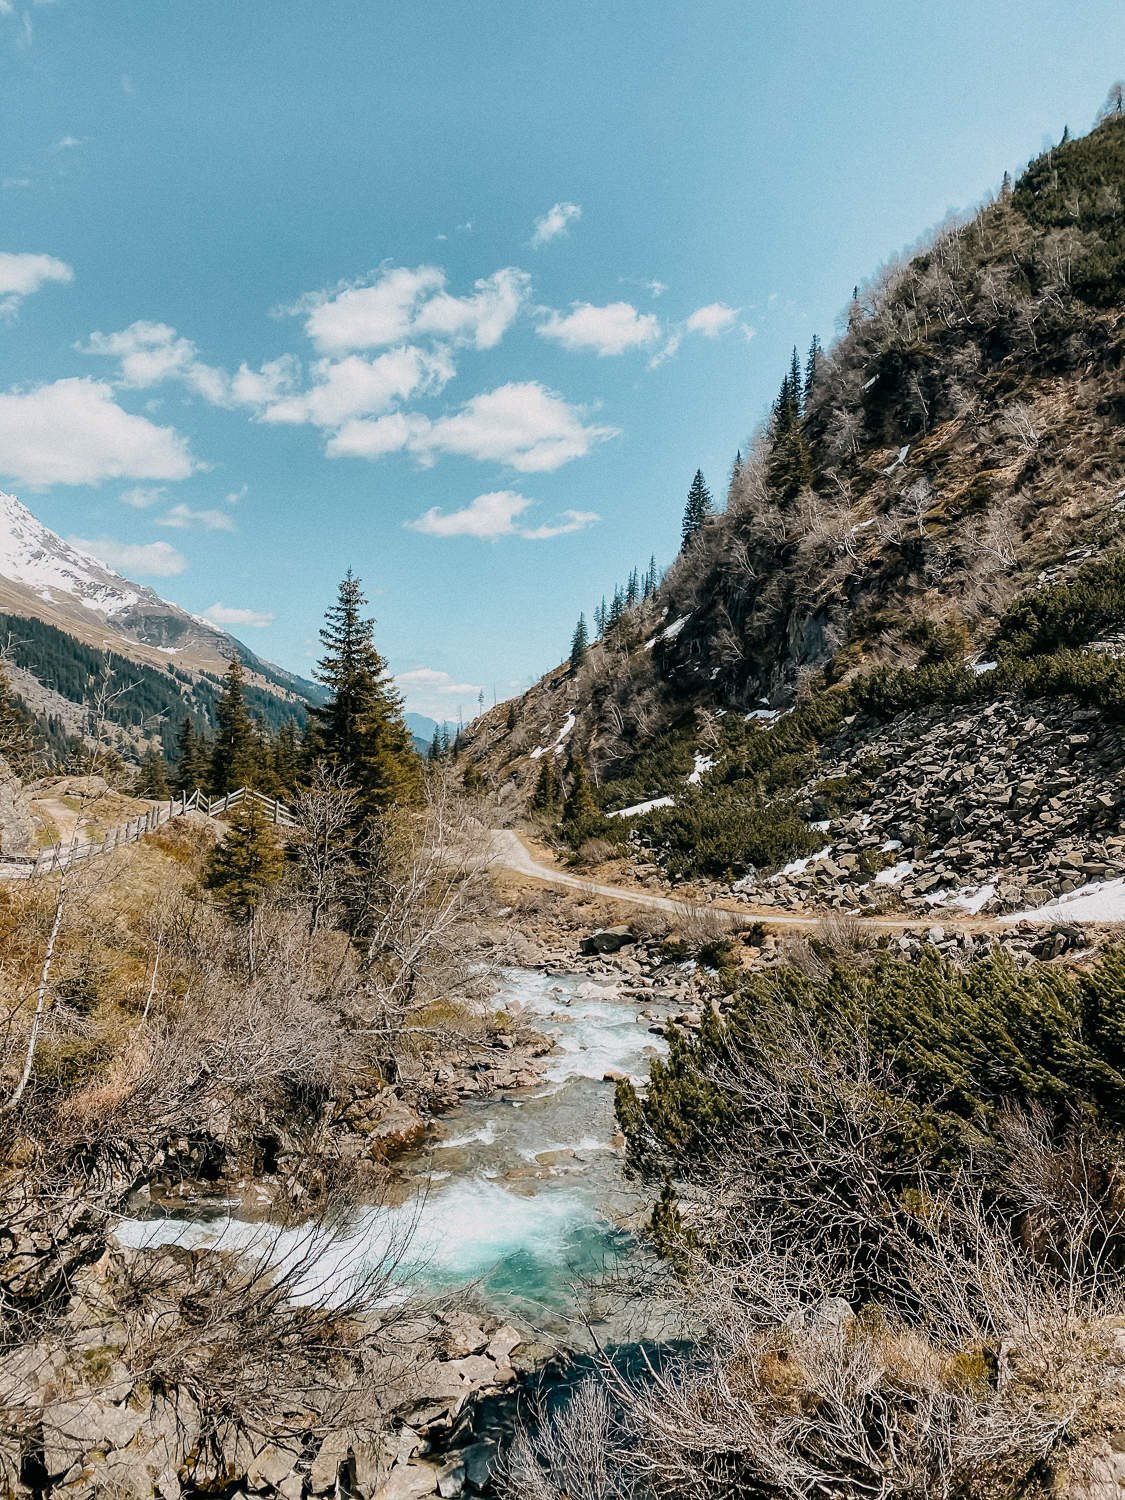 Urlaub Südtirol Tipps Wanderung beste Ausflüge Bergwanderung Burkhardklamm Klamm Wanderung Reiseblog 5